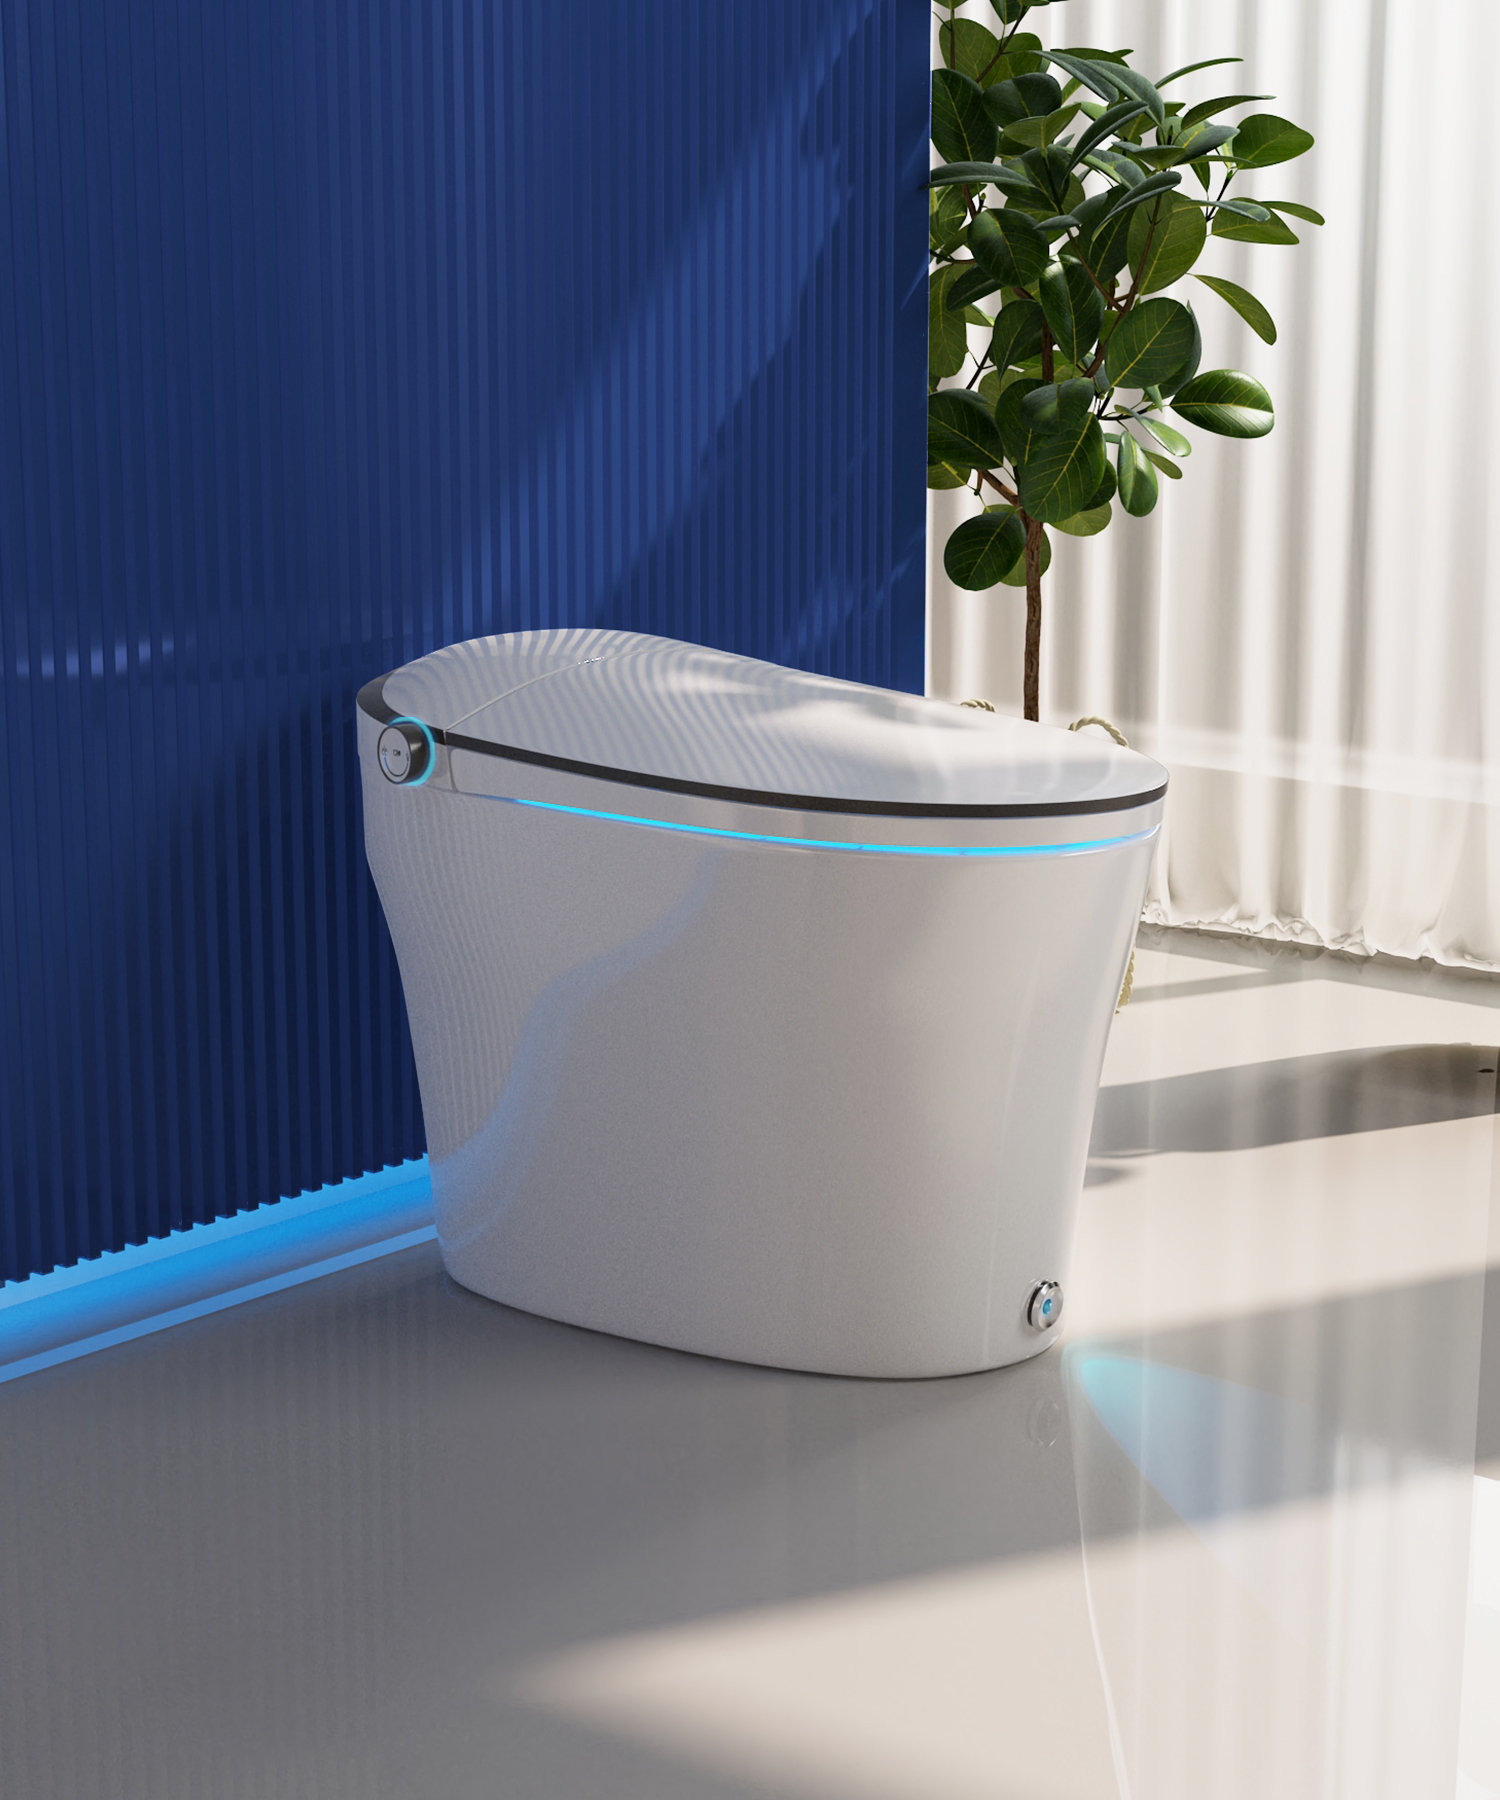 DeerValley Smart Bidet Toilet Quiet-Closed Heated Seat Sensor Auto